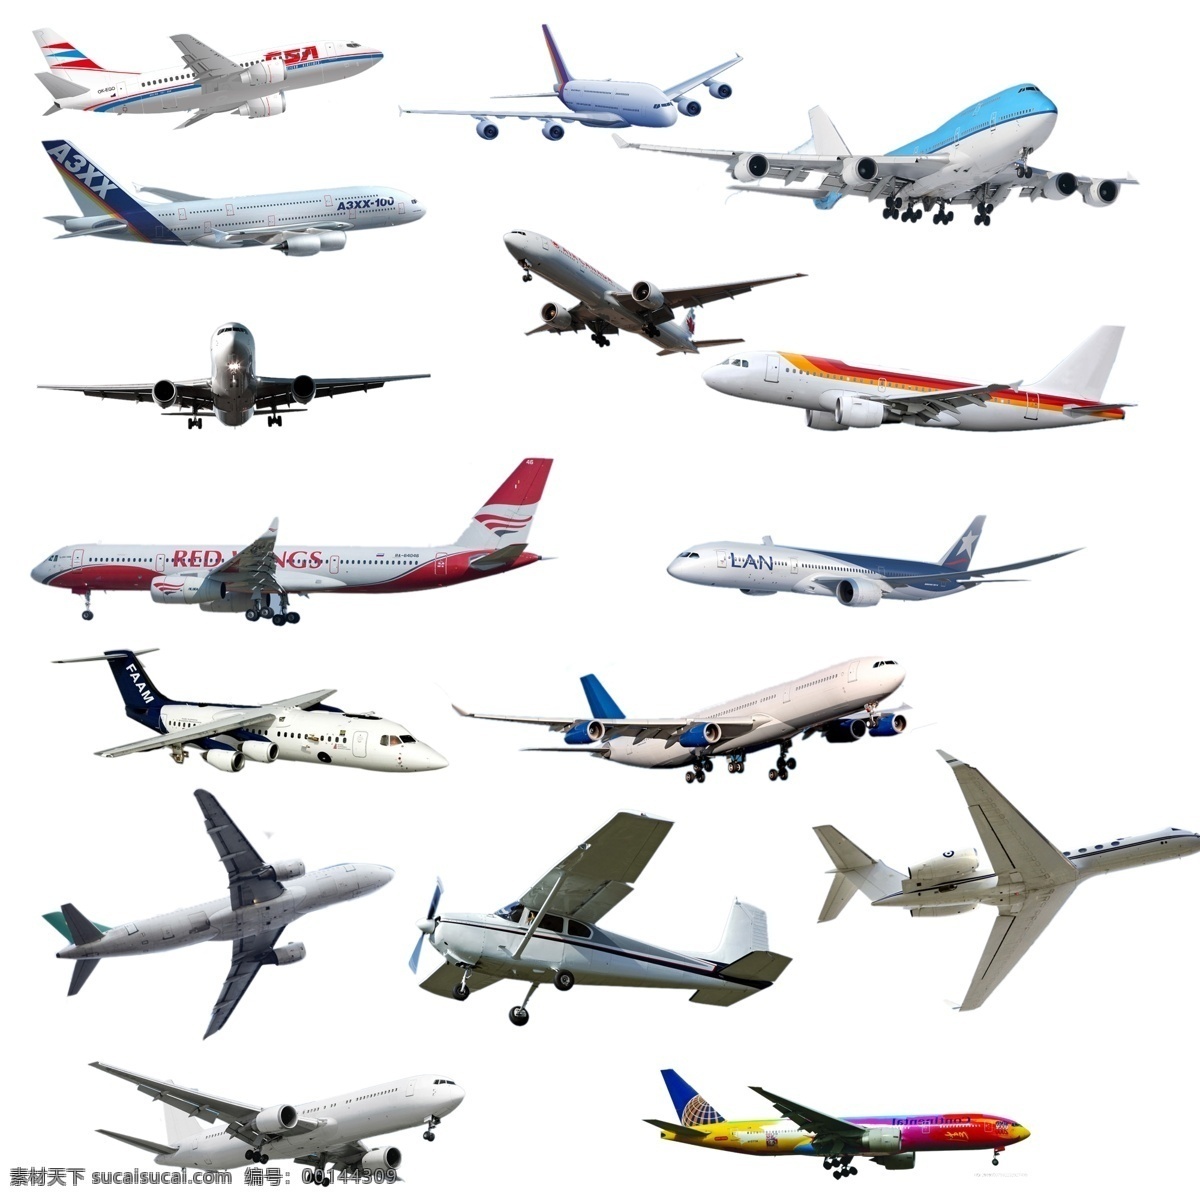 机 客机 螺旋桨飞机 喷气式飞机 老式飞机 交通工具 交通 直升飞机 飞机大全 各种飞机 装饰 现代科技